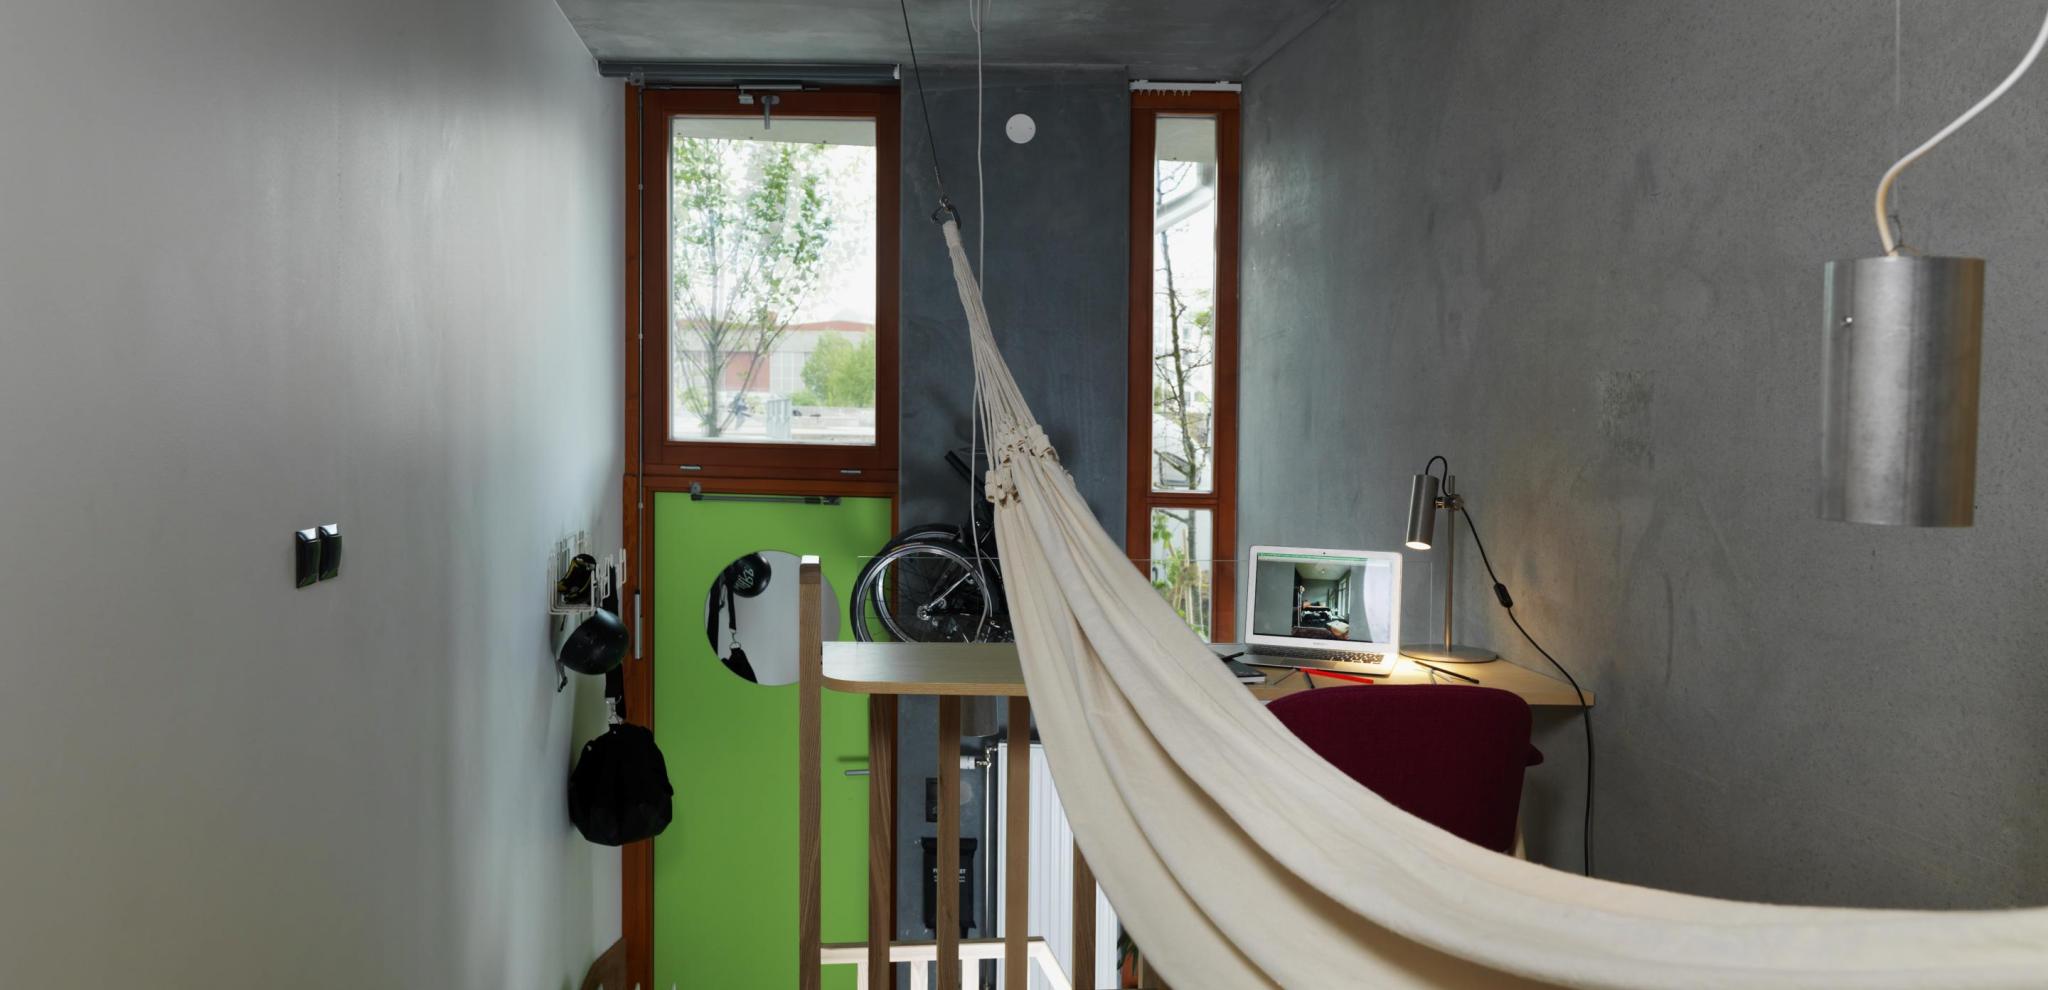 Ohboy hotel room with hammock and green door